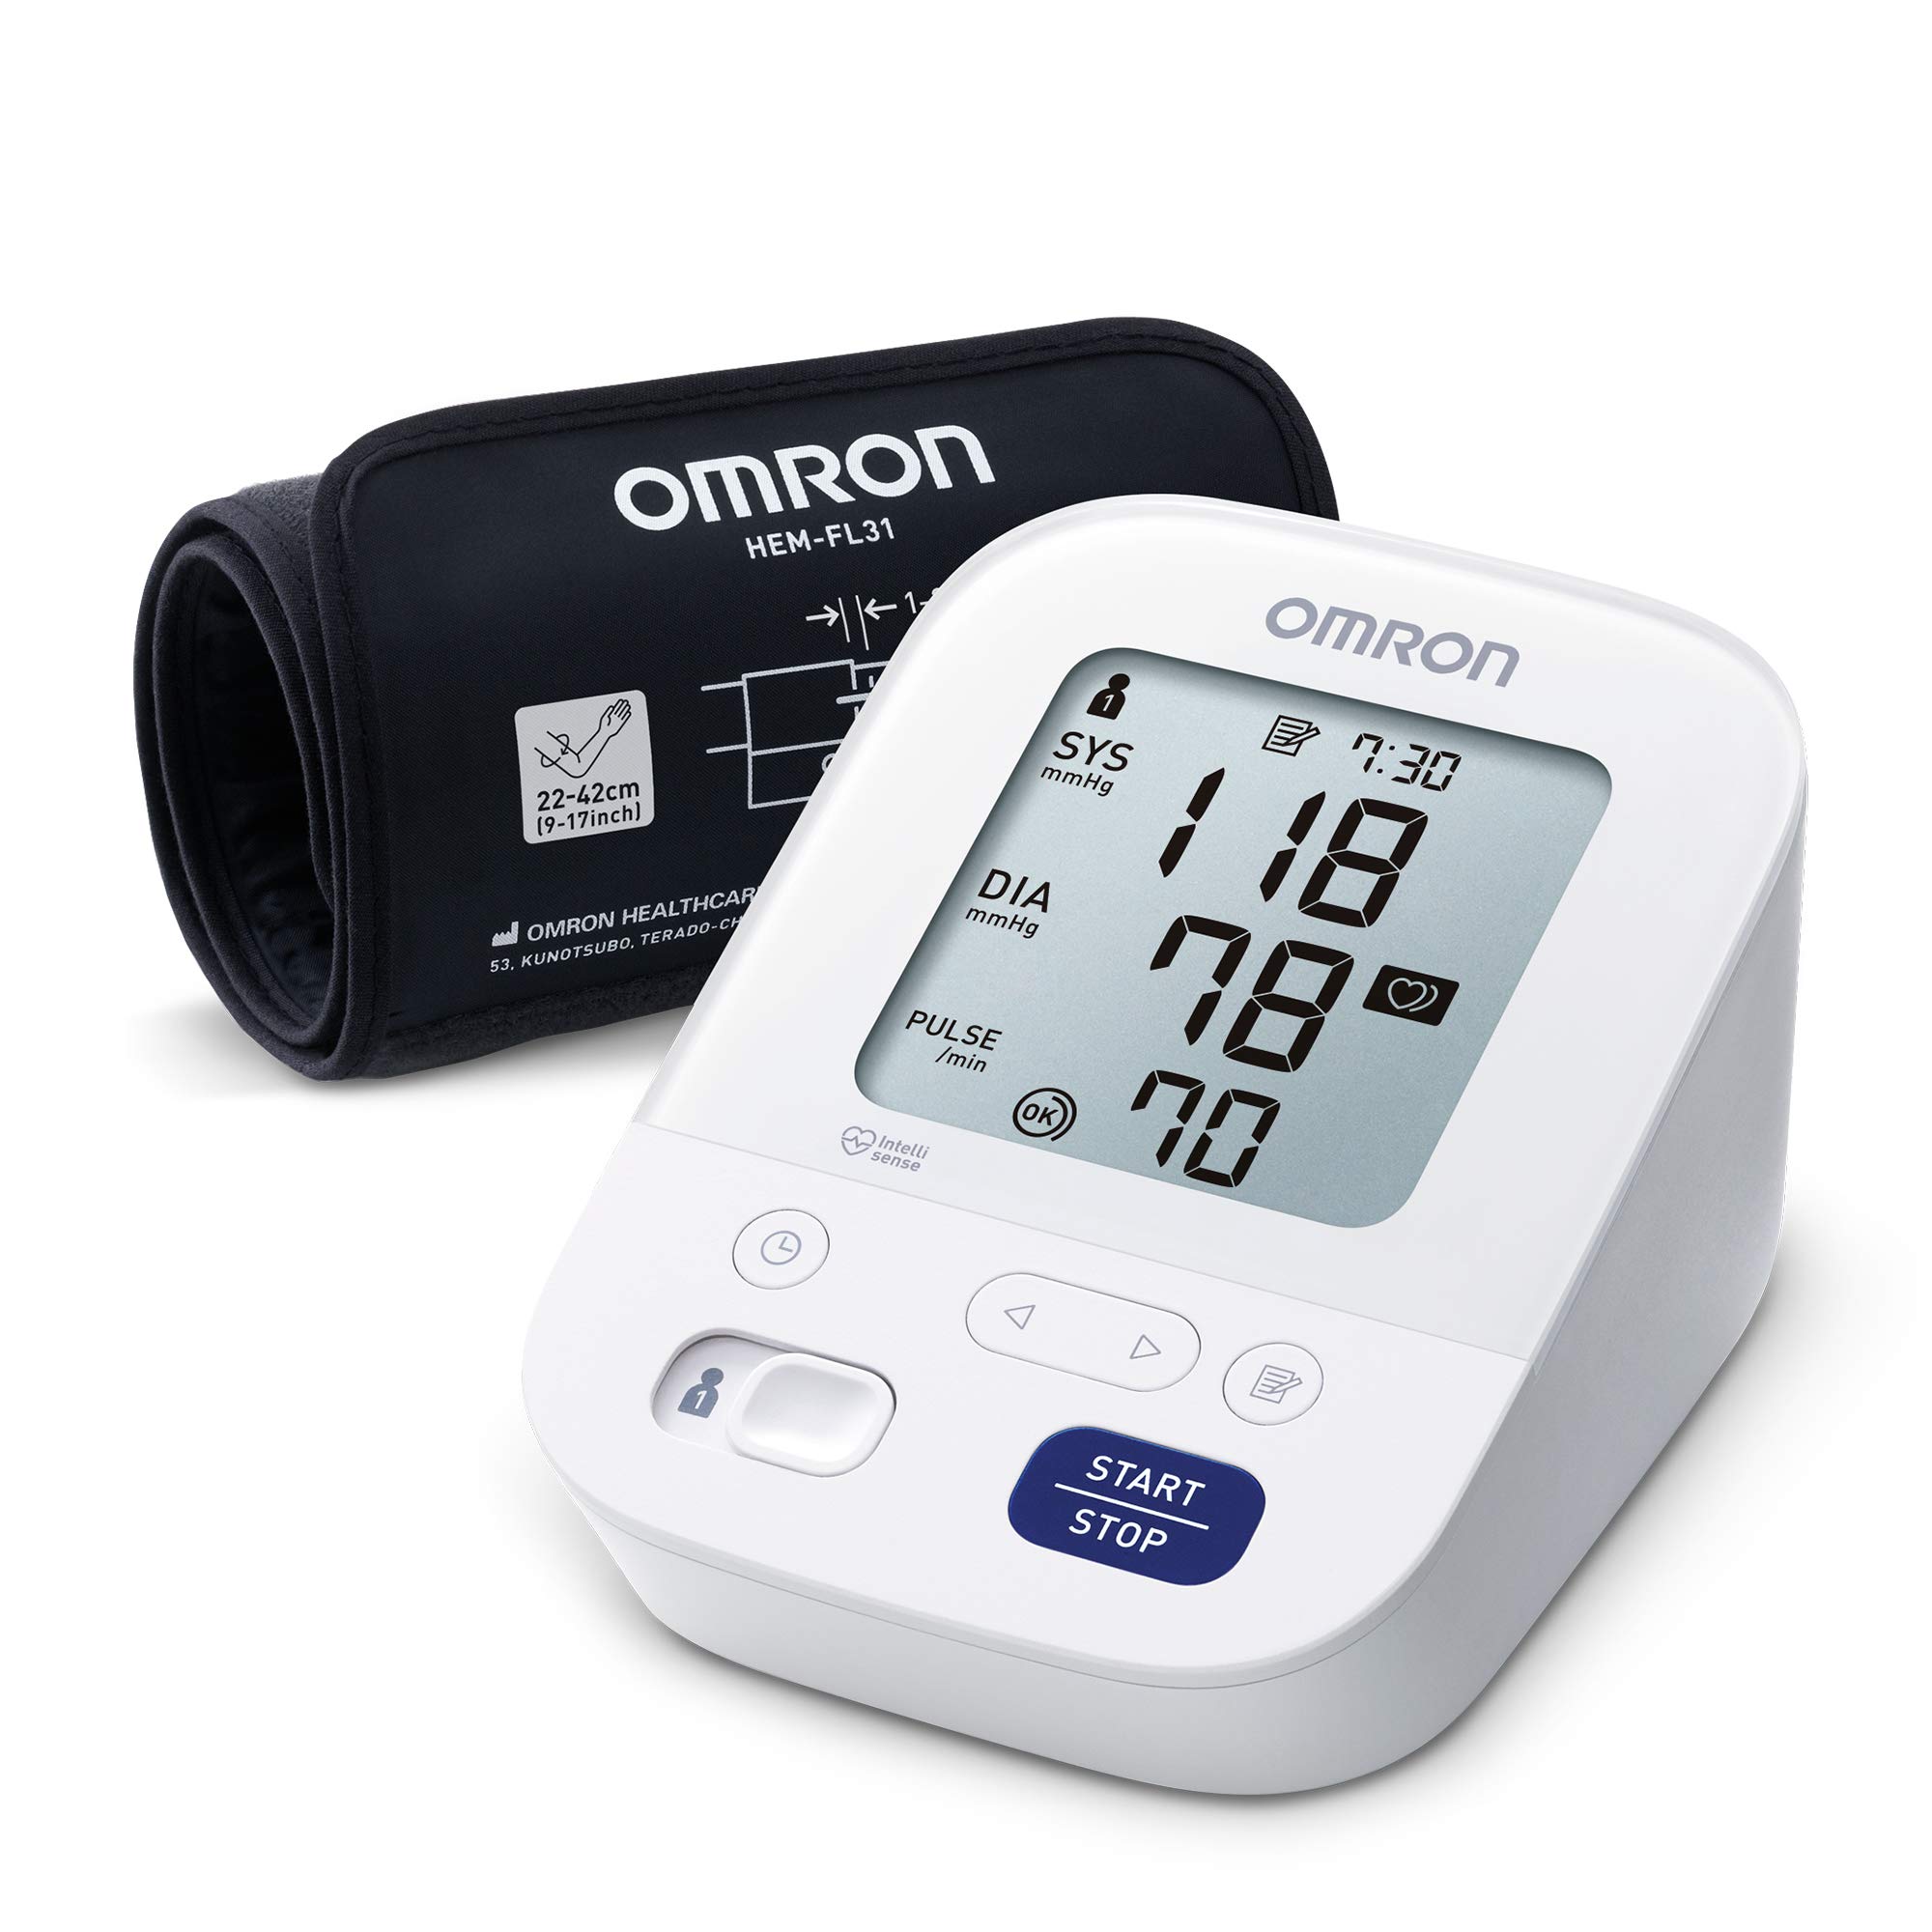 OMRON X3 Comfort - Automatisches Oberarm-Blutdruckmessgerät, Gut" in Stiftung Warentest 09/2020, klinisch validiert, auch für Diabetiker und Schwangere, Intelli Wrap Manschette - sichere Anwendung